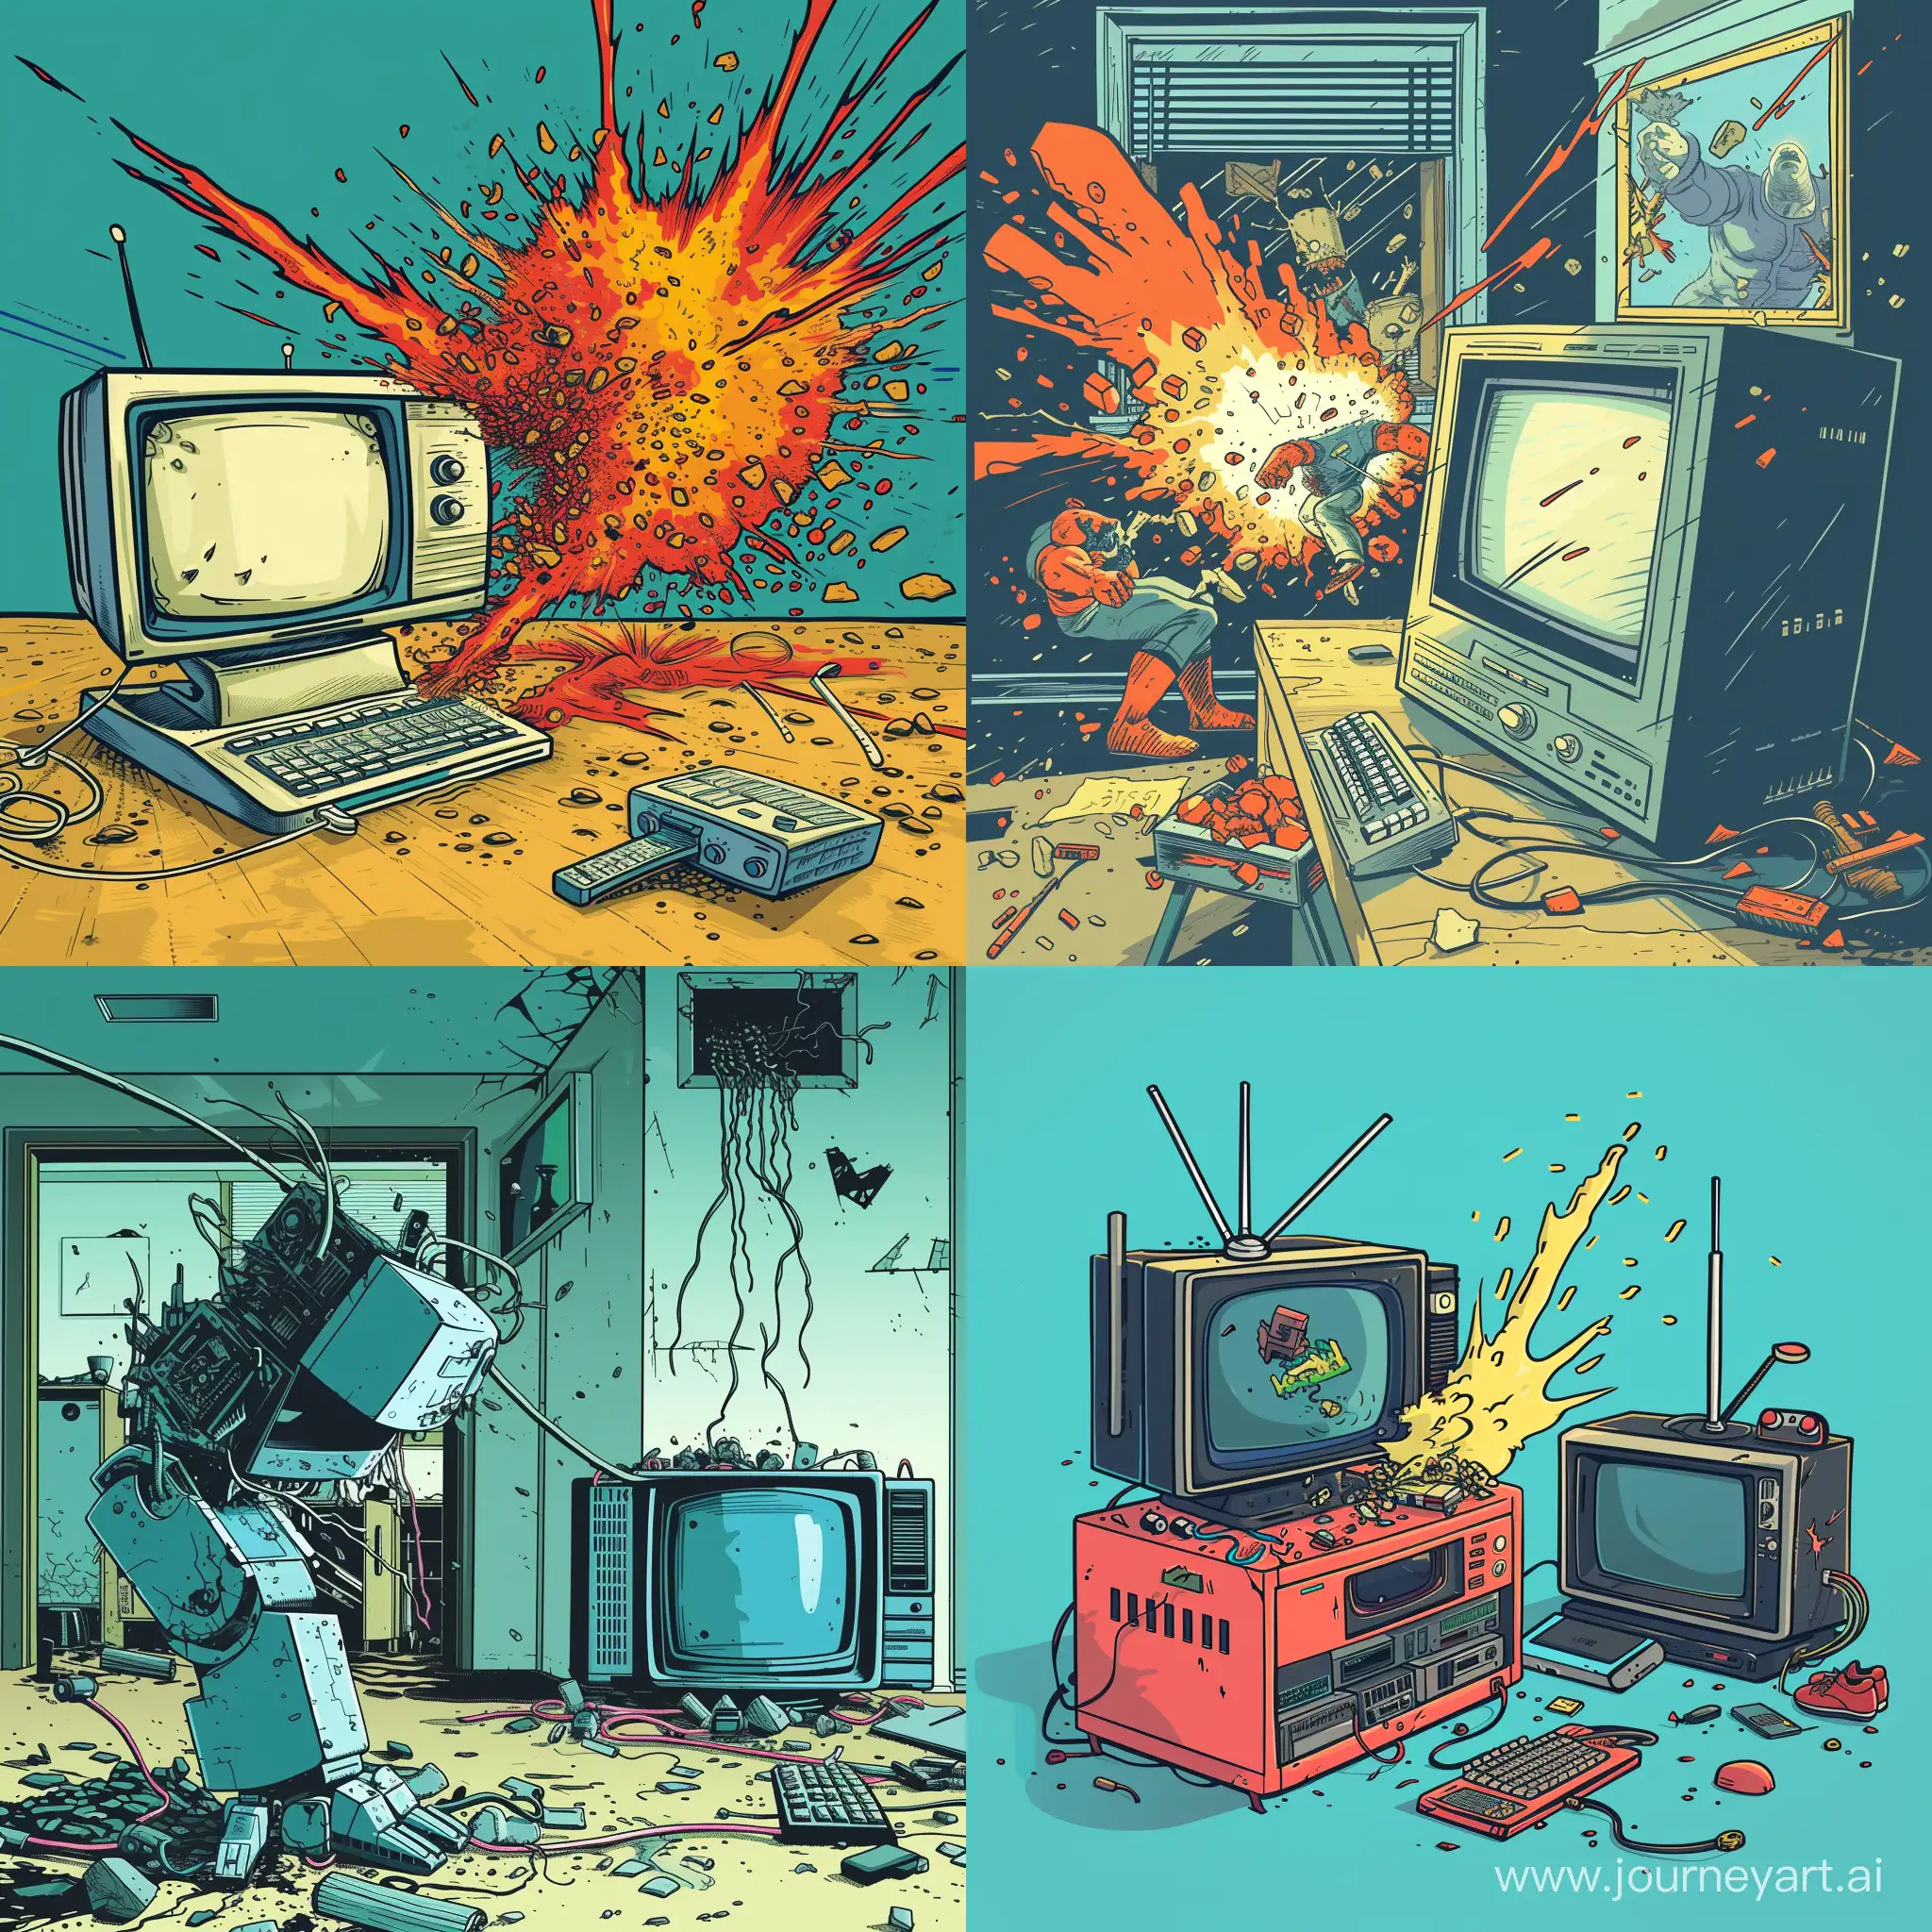 Компьютер сражается против телевизора, комикс